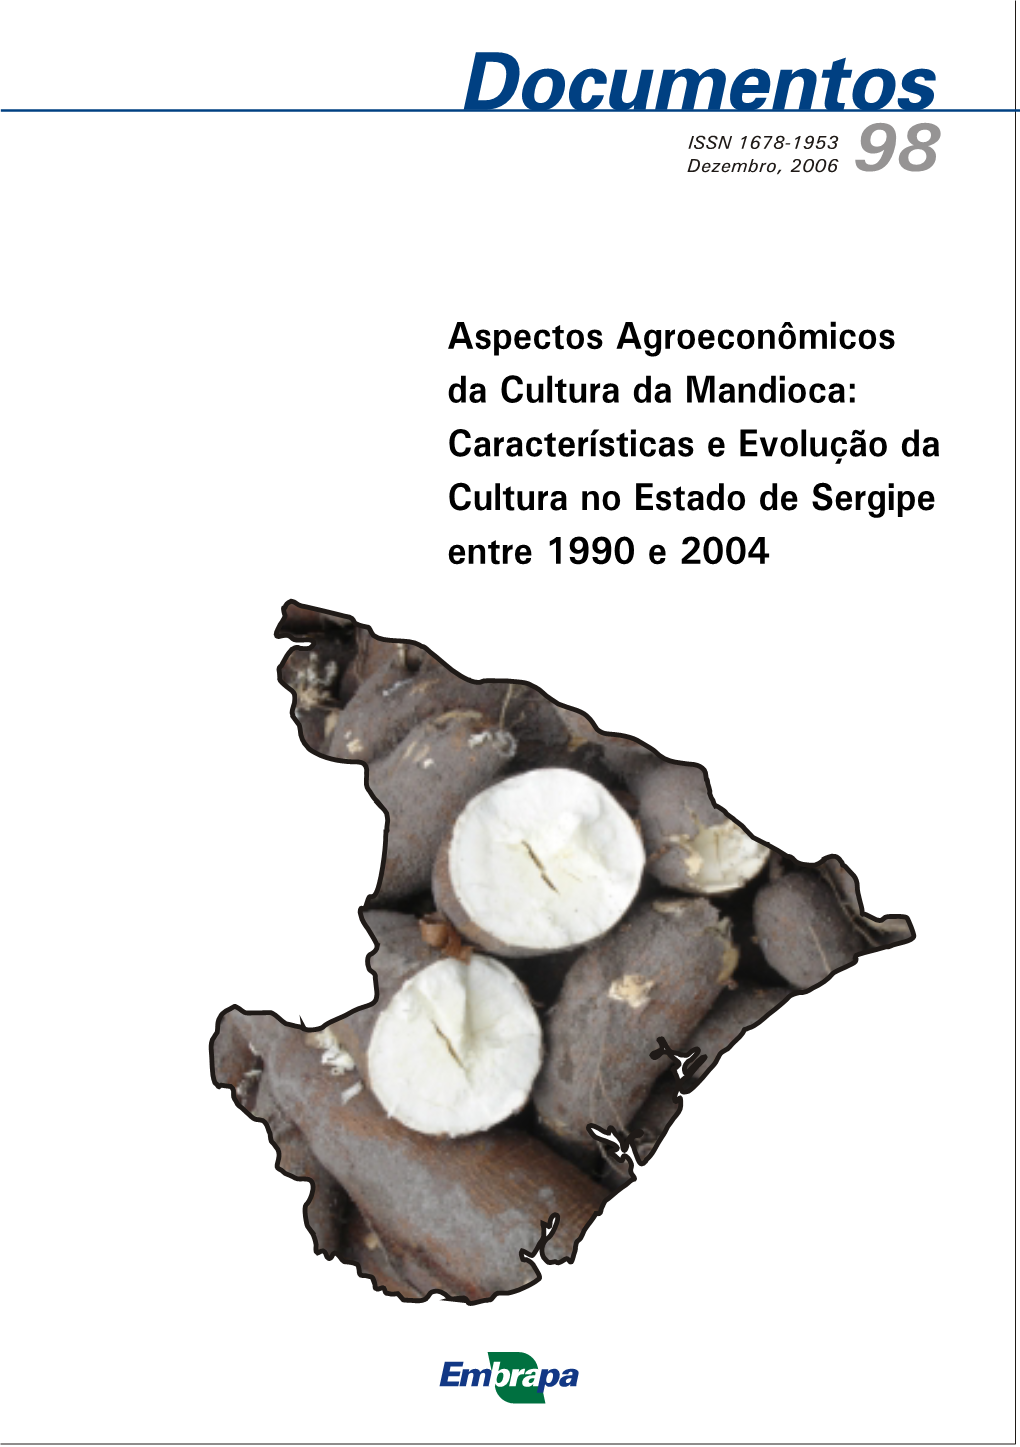 Características E Evolução Da Cultura No Estado De Sergipe Entre 1990 E 2004 ISSN 1678-1953 Dezembro, 2006